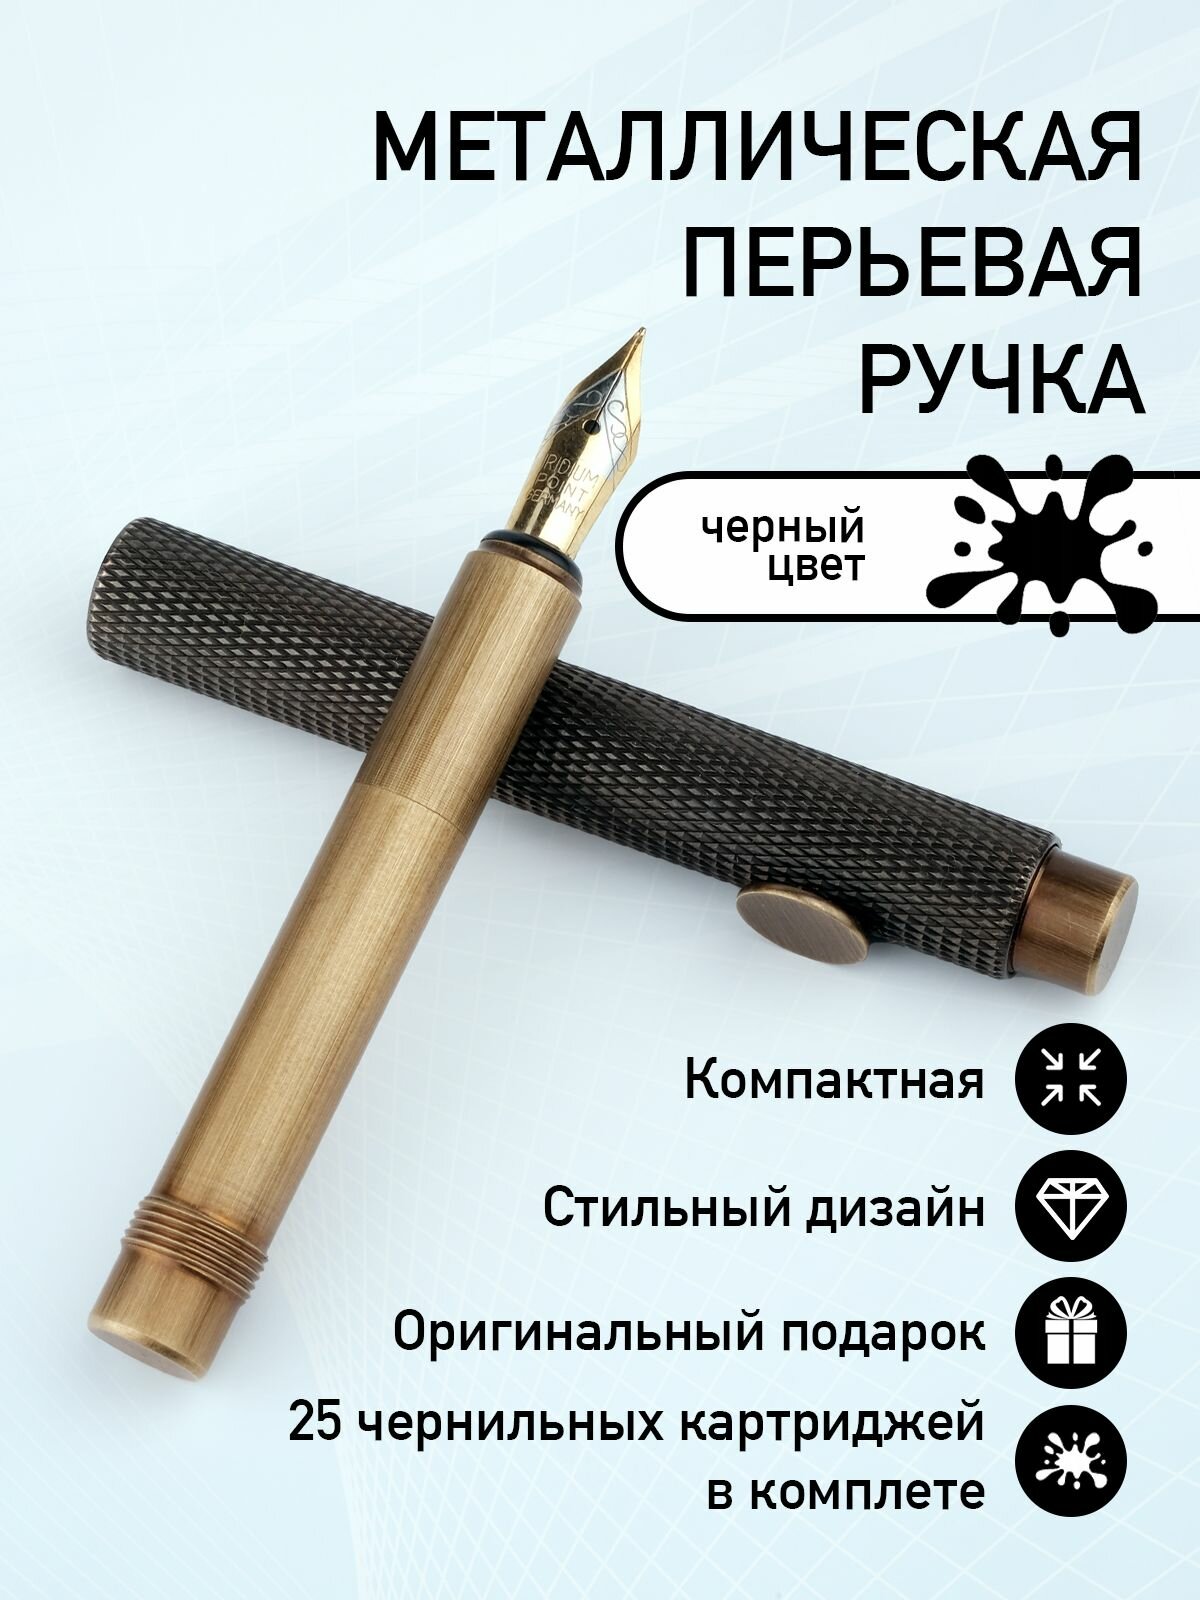 Перьевая подарочная металлическая ручка с картриджами